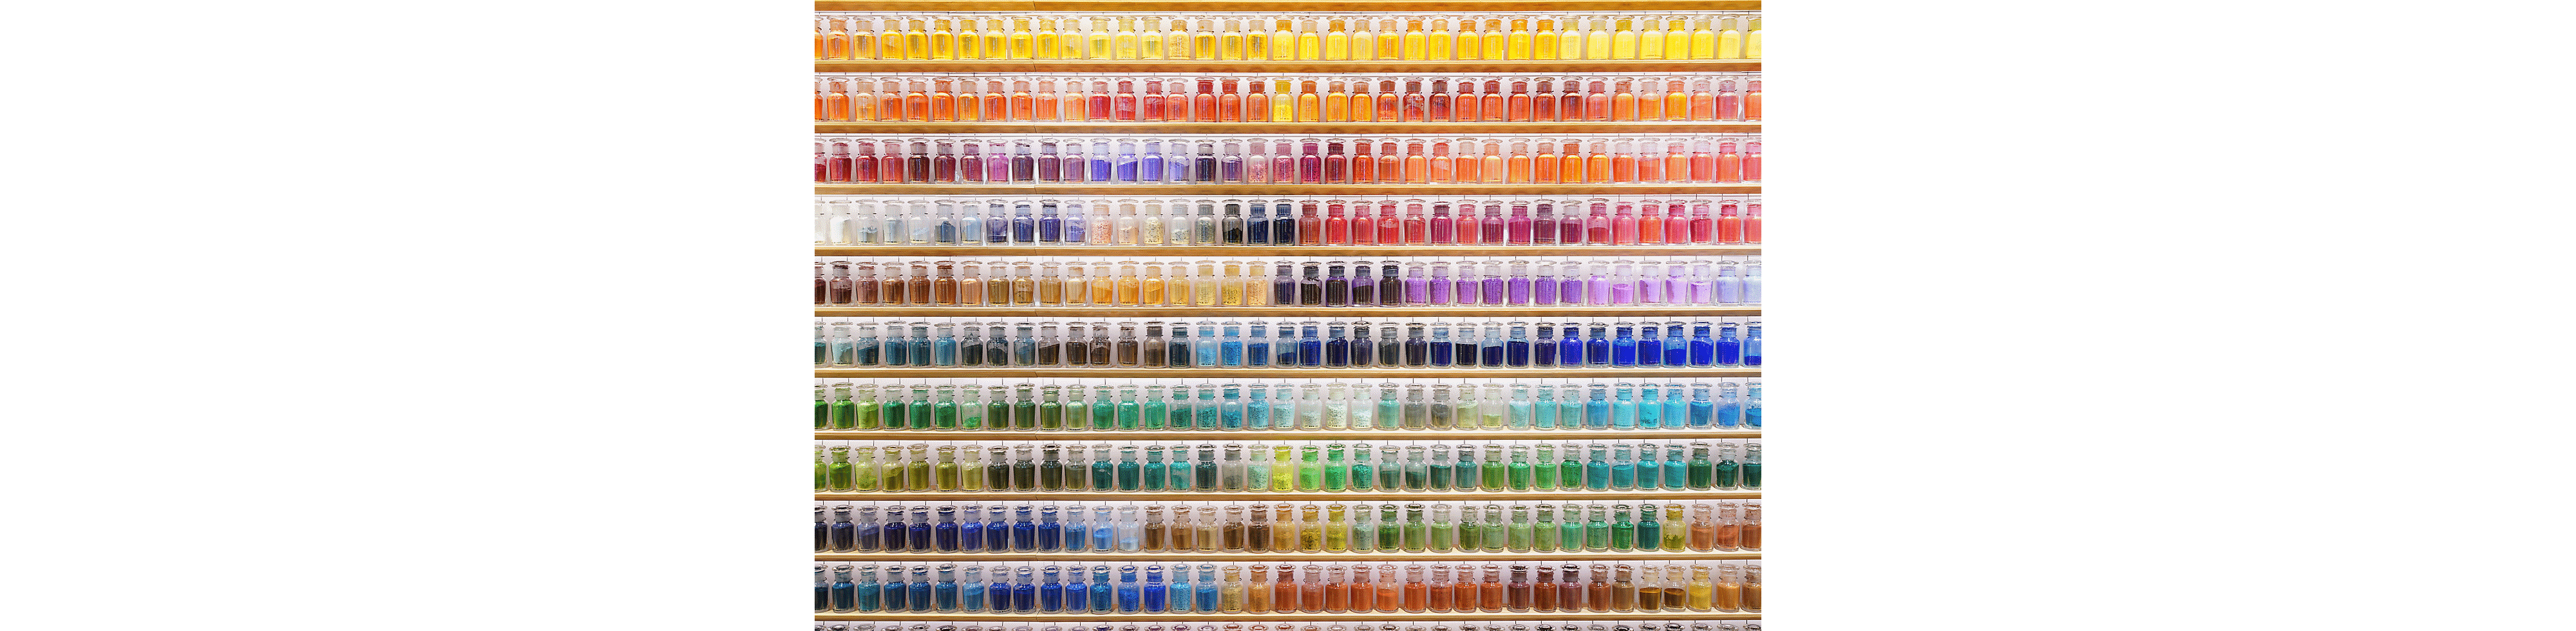 Εικόνα παραδείγματος με τοίχο γεμάτο πολύχρωμα μπουκάλια